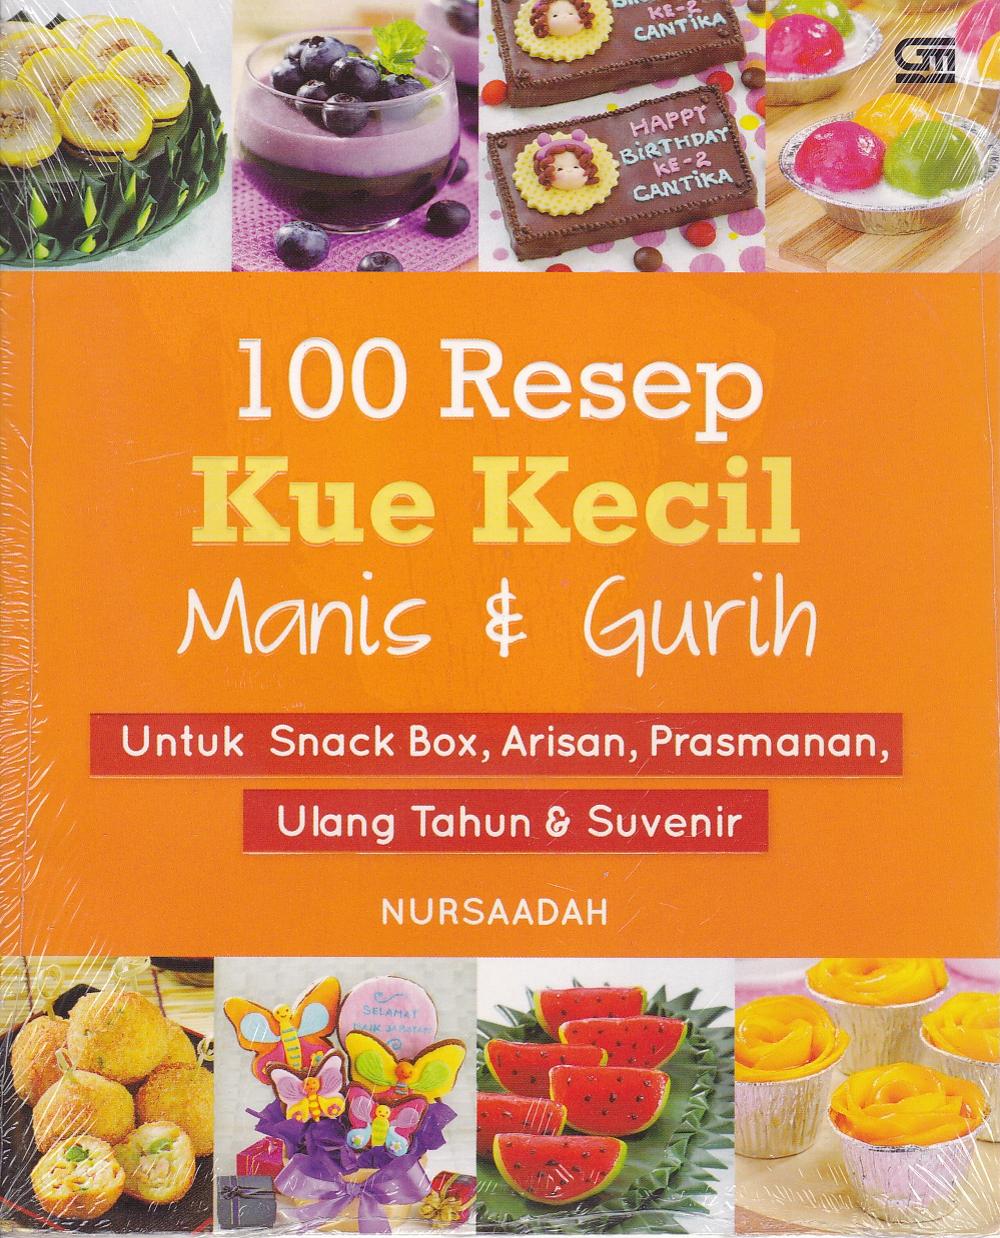 100 Resep Kue Kecil Manis & Gurih :  untuk snack box, arisan, prasmanan, ulang tahun & suvenir